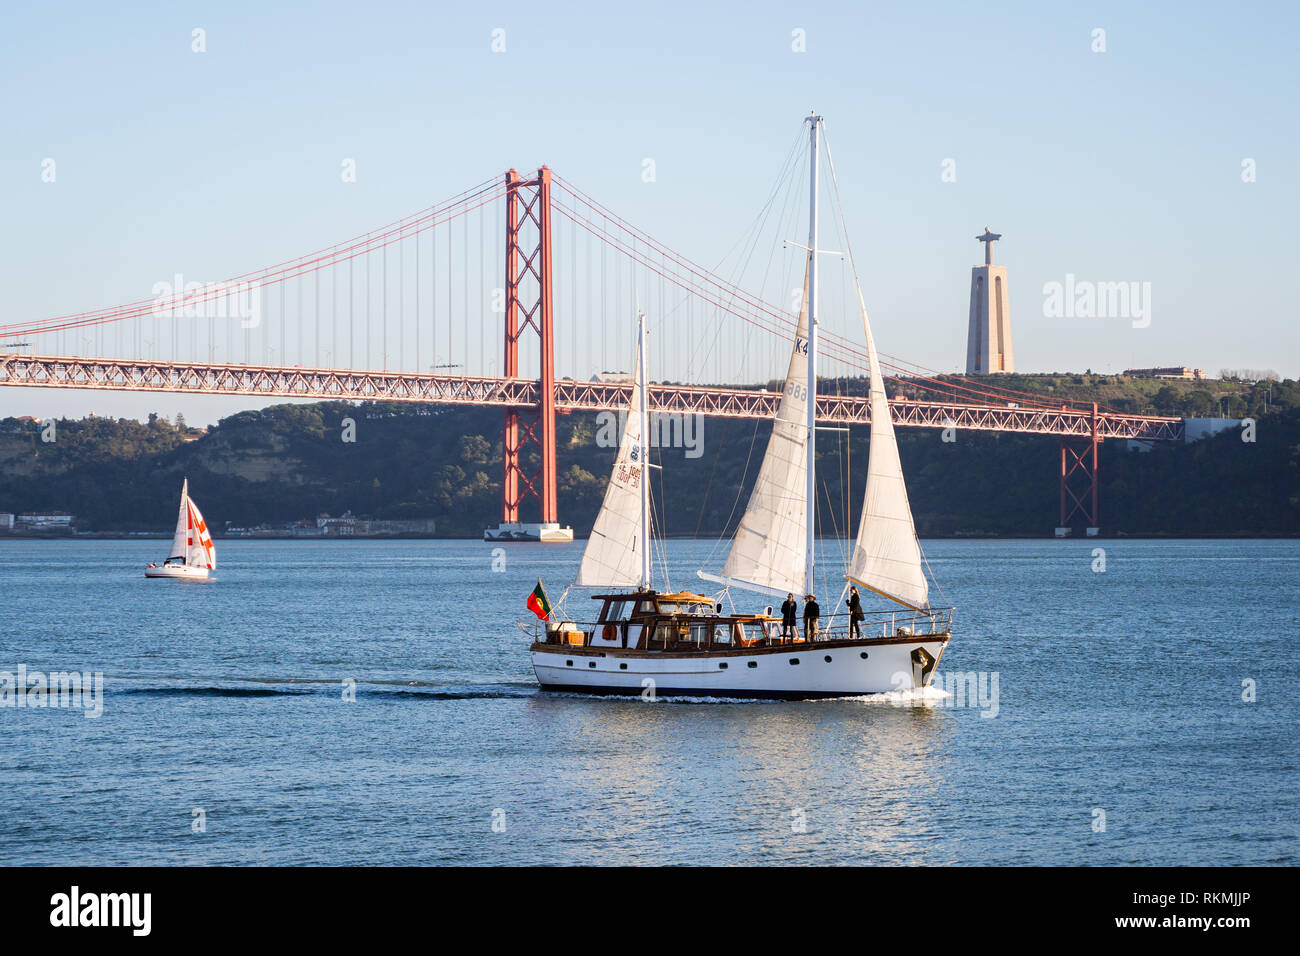 Lisbonne, Portugal - 12/28/18 : Voiliers à voiles blanches sur le fleuve Tage, 25 avril (25 de abril) Pont, Christ Roi de l'ascenseur dans la zone de la tour Banque D'Images